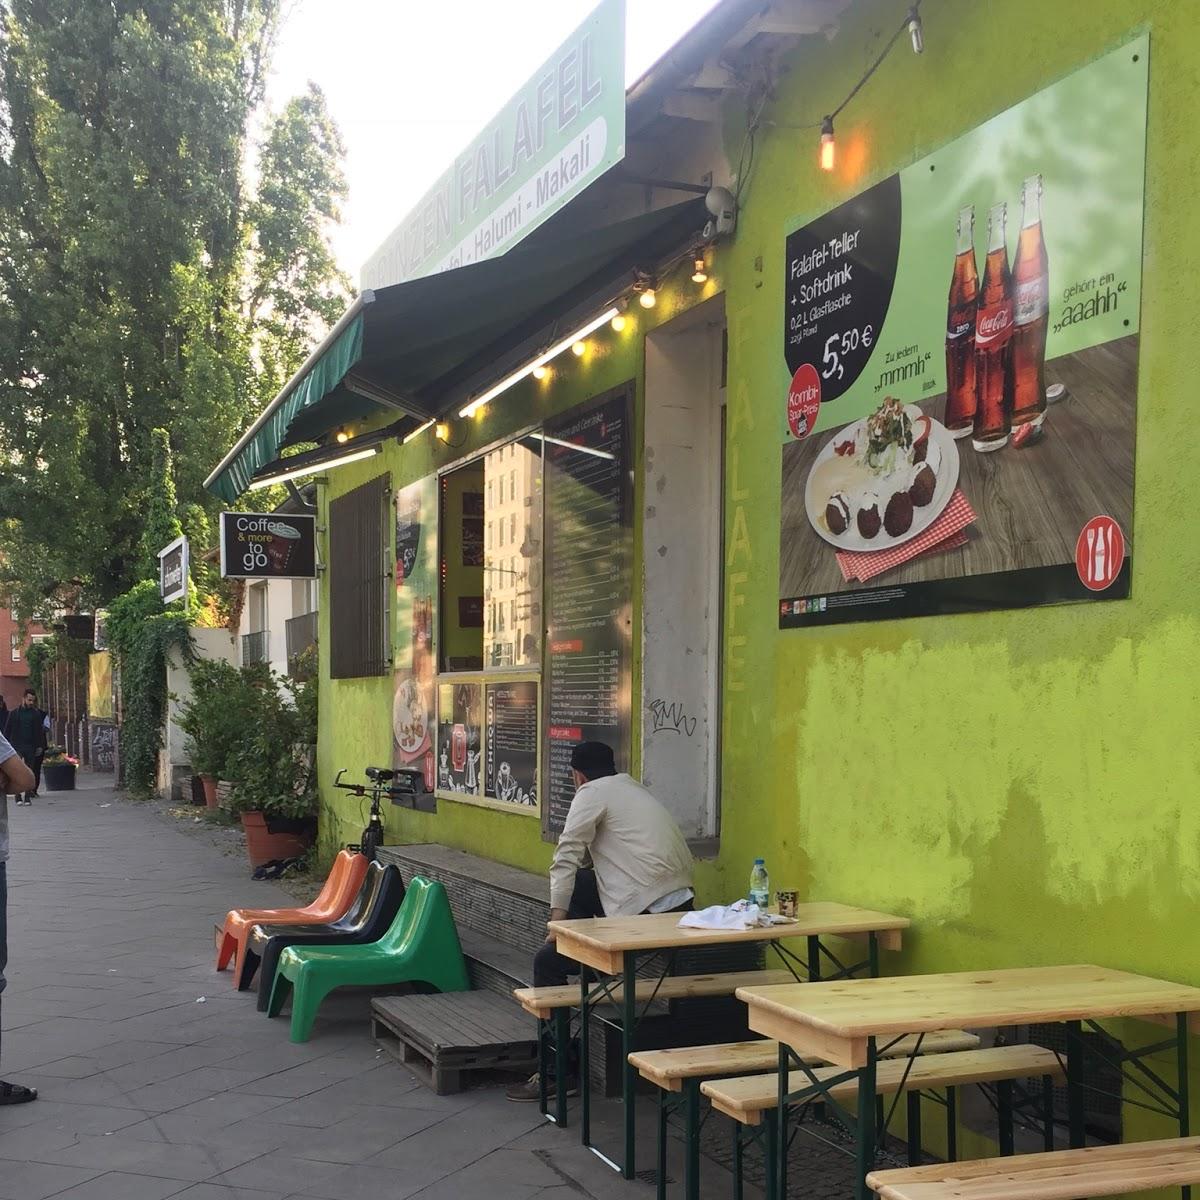 Restaurant "Prinzen Falafel Imbiss" in Berlin